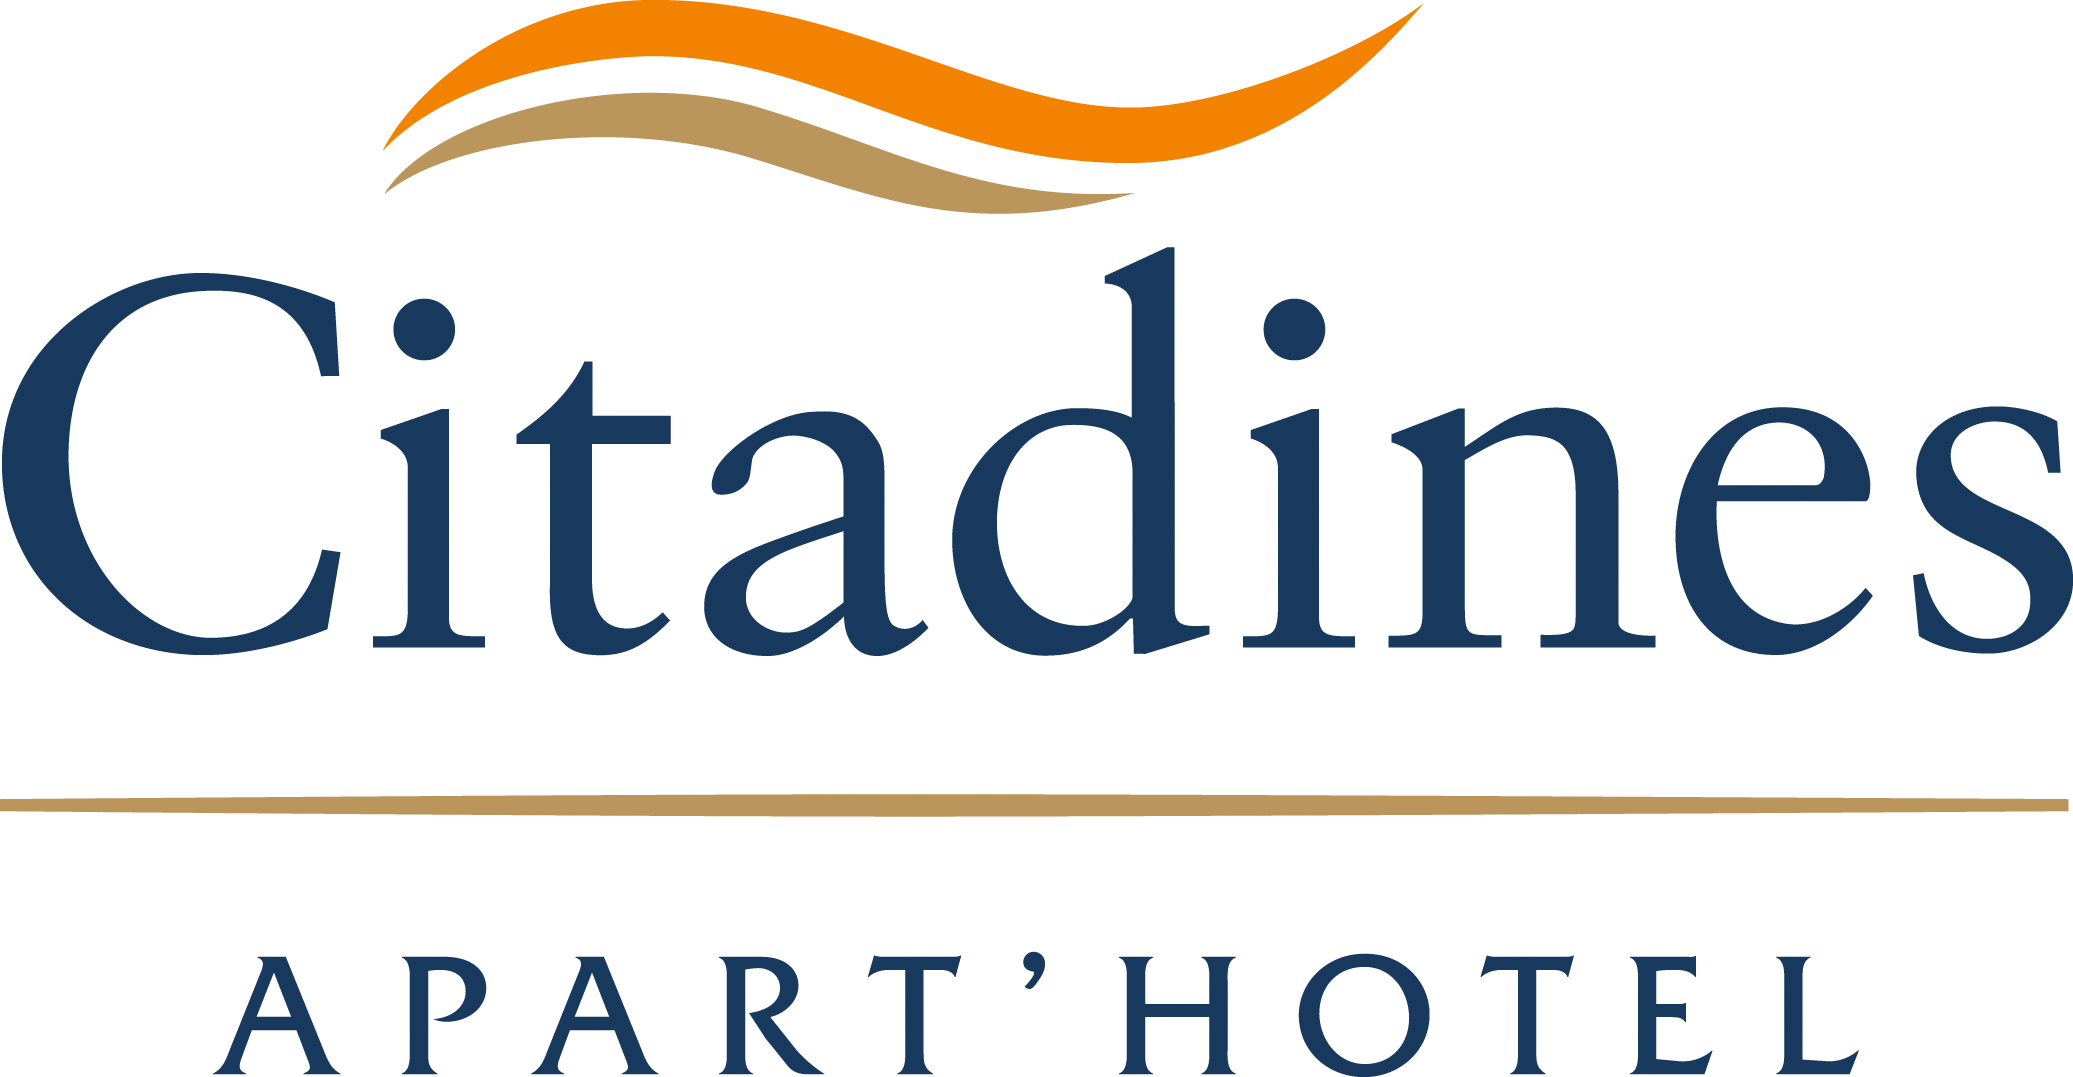 Citadines Hotel Logo - citadines-apart-hotel-logo - ABG